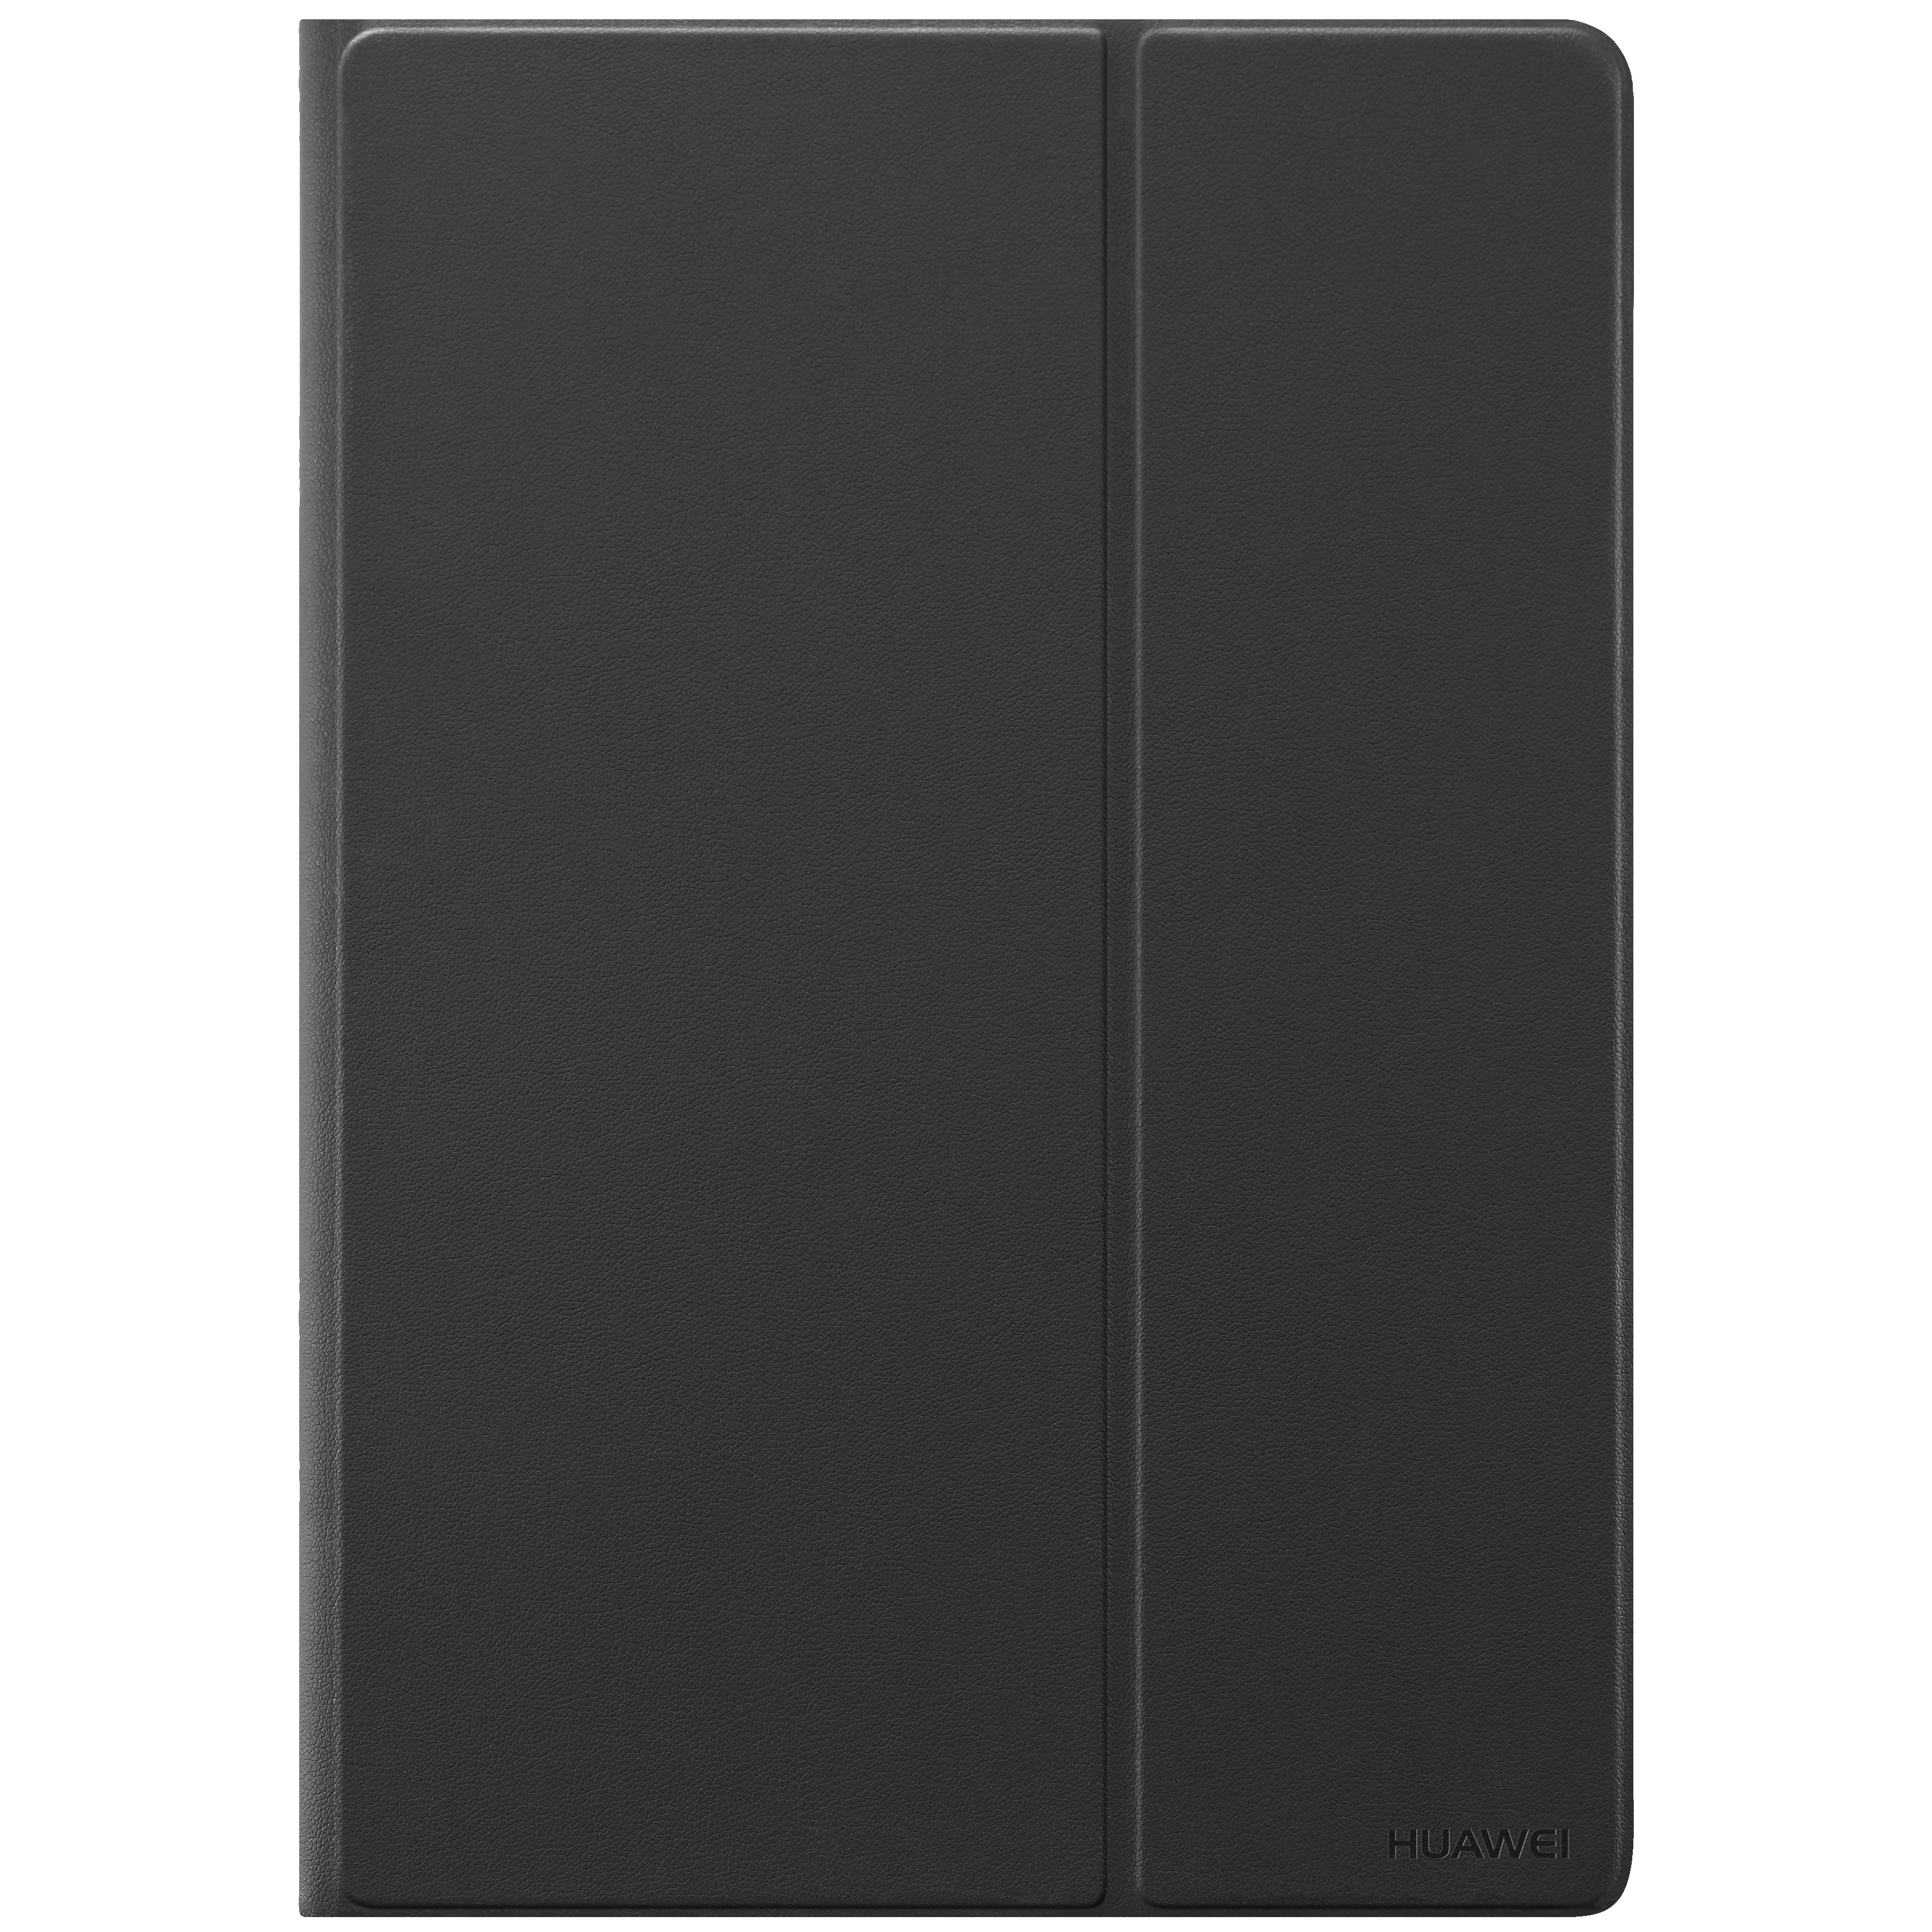 Huawei MediaPad T3 10 cover (sort) - iPad og tablet tilbehør ...